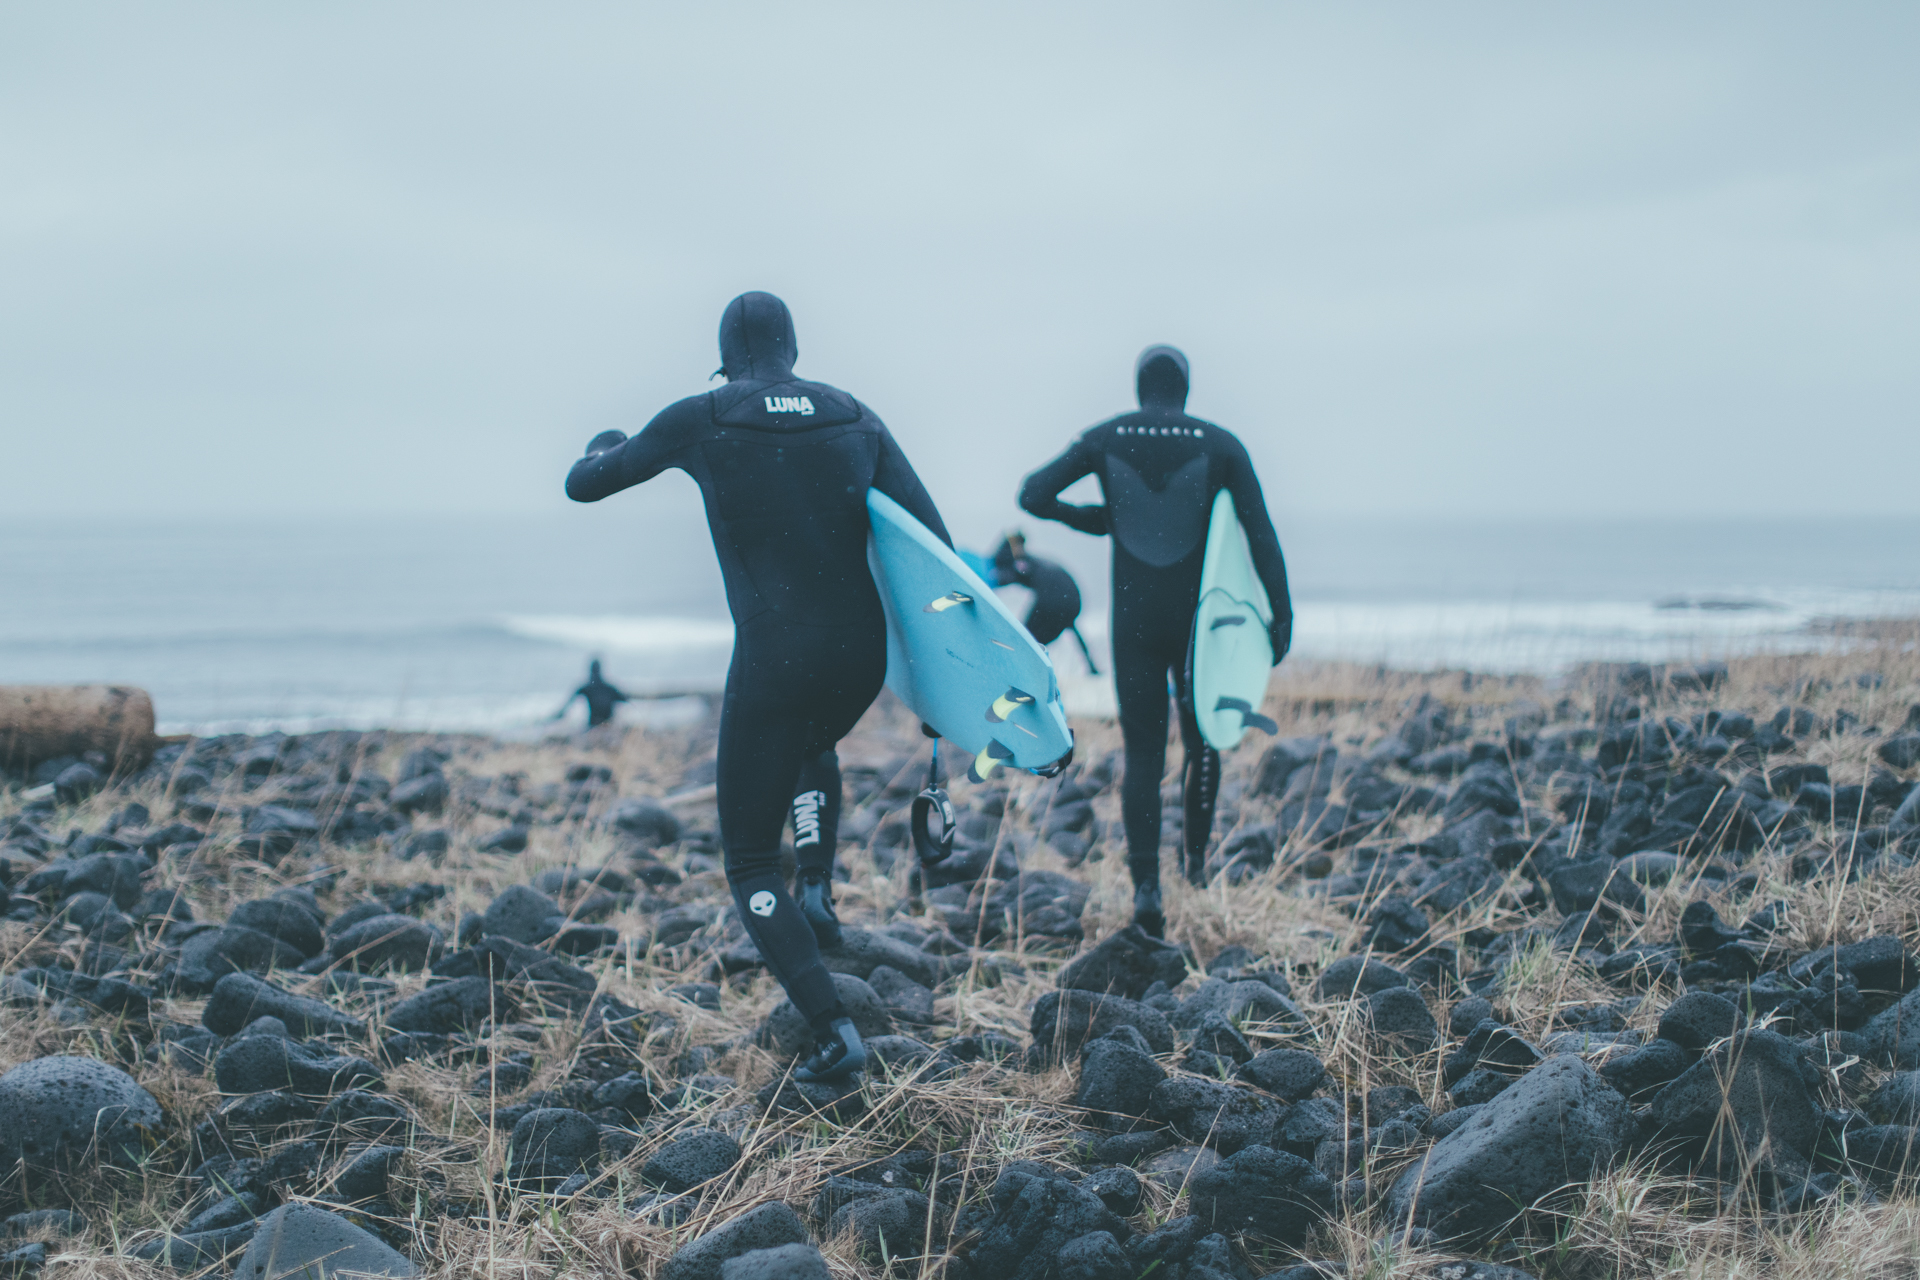 Dokumentární snímek o surfařích na Islandu Between Fjords se v září dočká premiéry